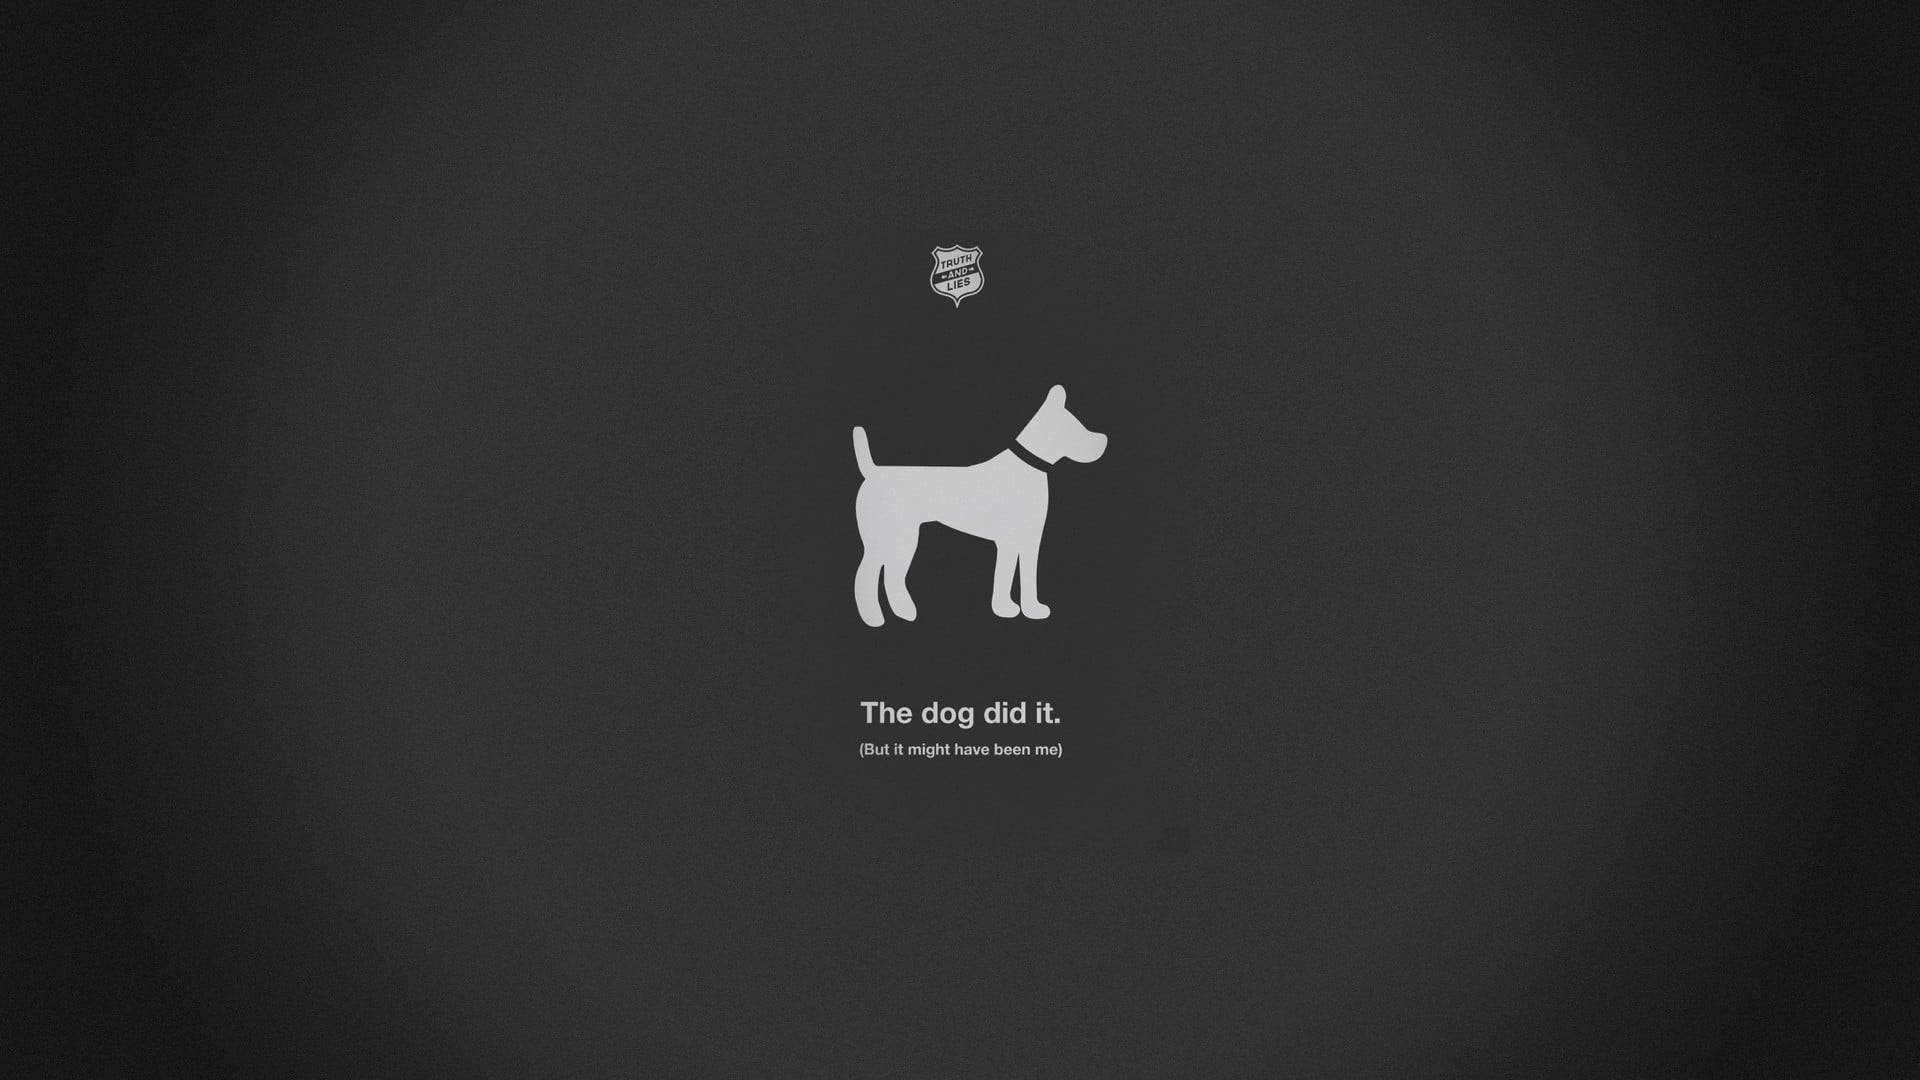 white dog illustration, minimalism, humor, simple background